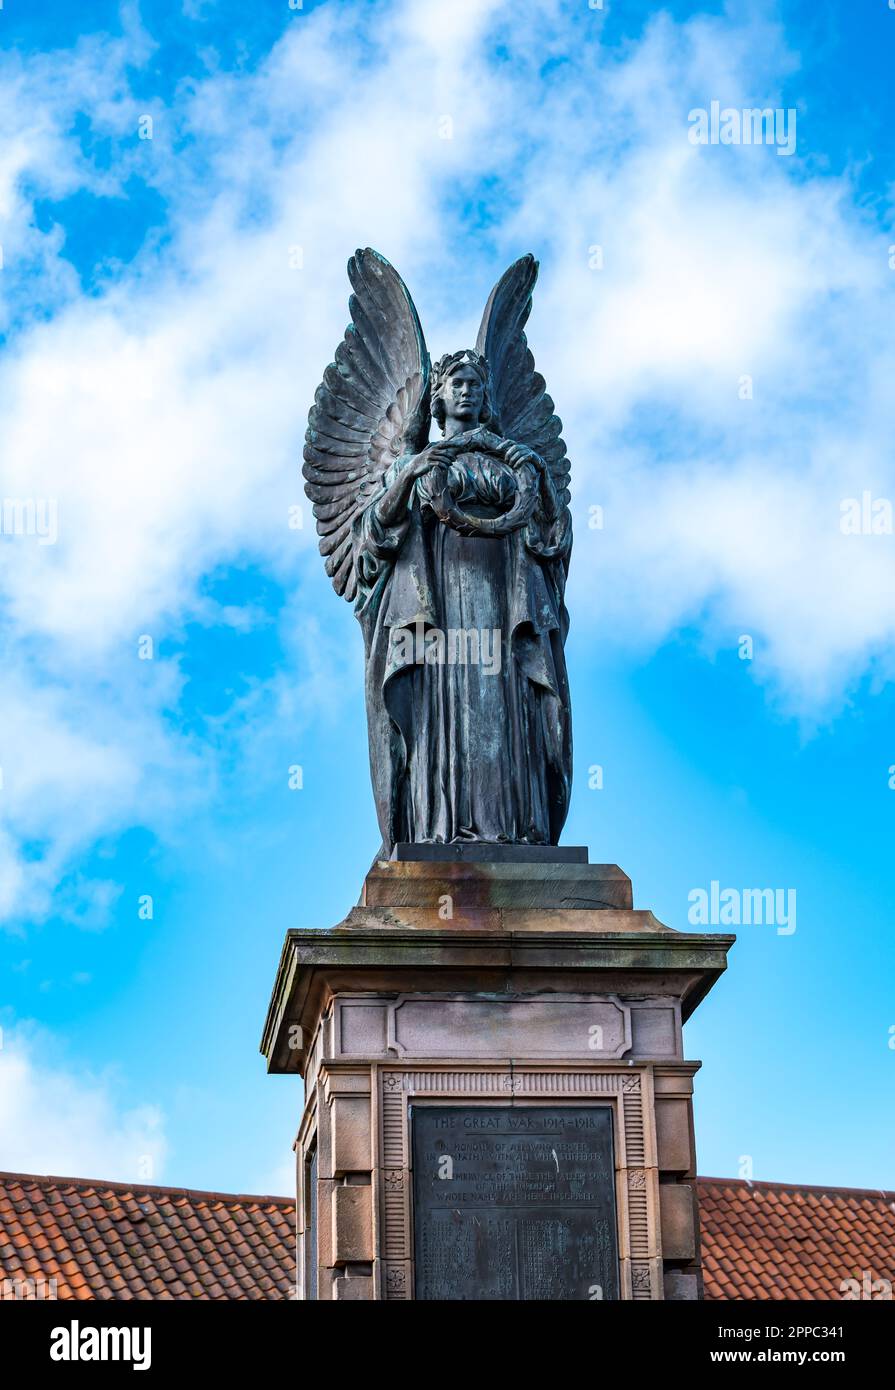 Statue de l'Ange de la paix par Alexander Carrick au mémorial de guerre, Berwick upon Tweed, Angleterre, Royaume-Uni Banque D'Images